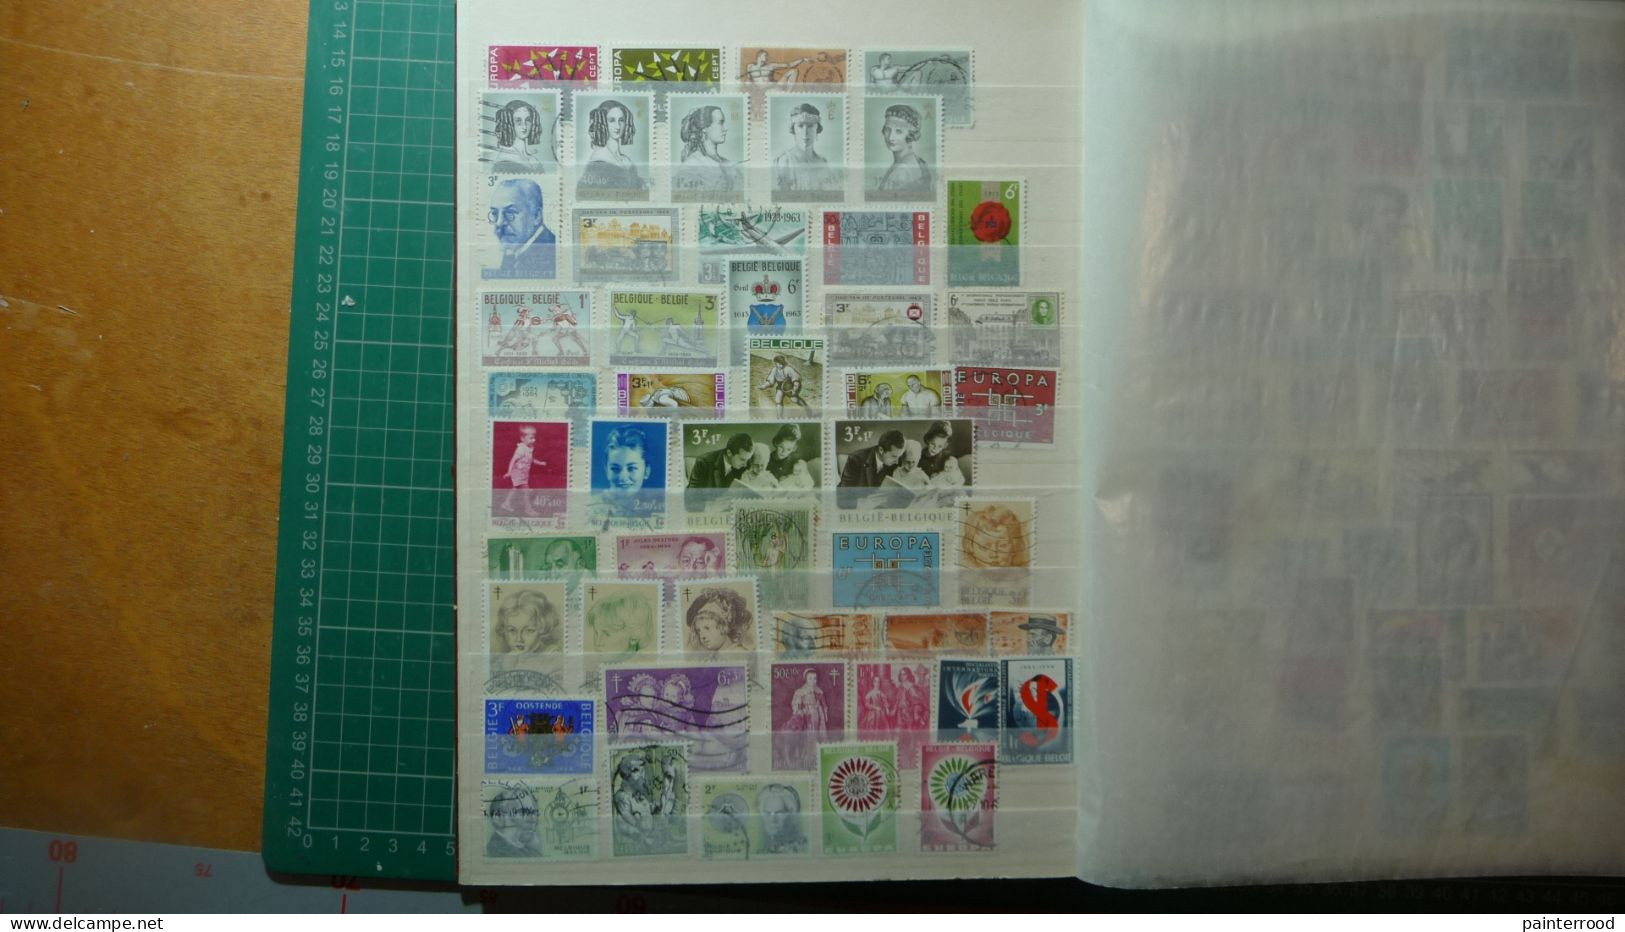 Album postzegels België 1954 - 1984 ongeveer een 800-tal zegels met enige voorgefrankeerde postkaarten icl. Congo